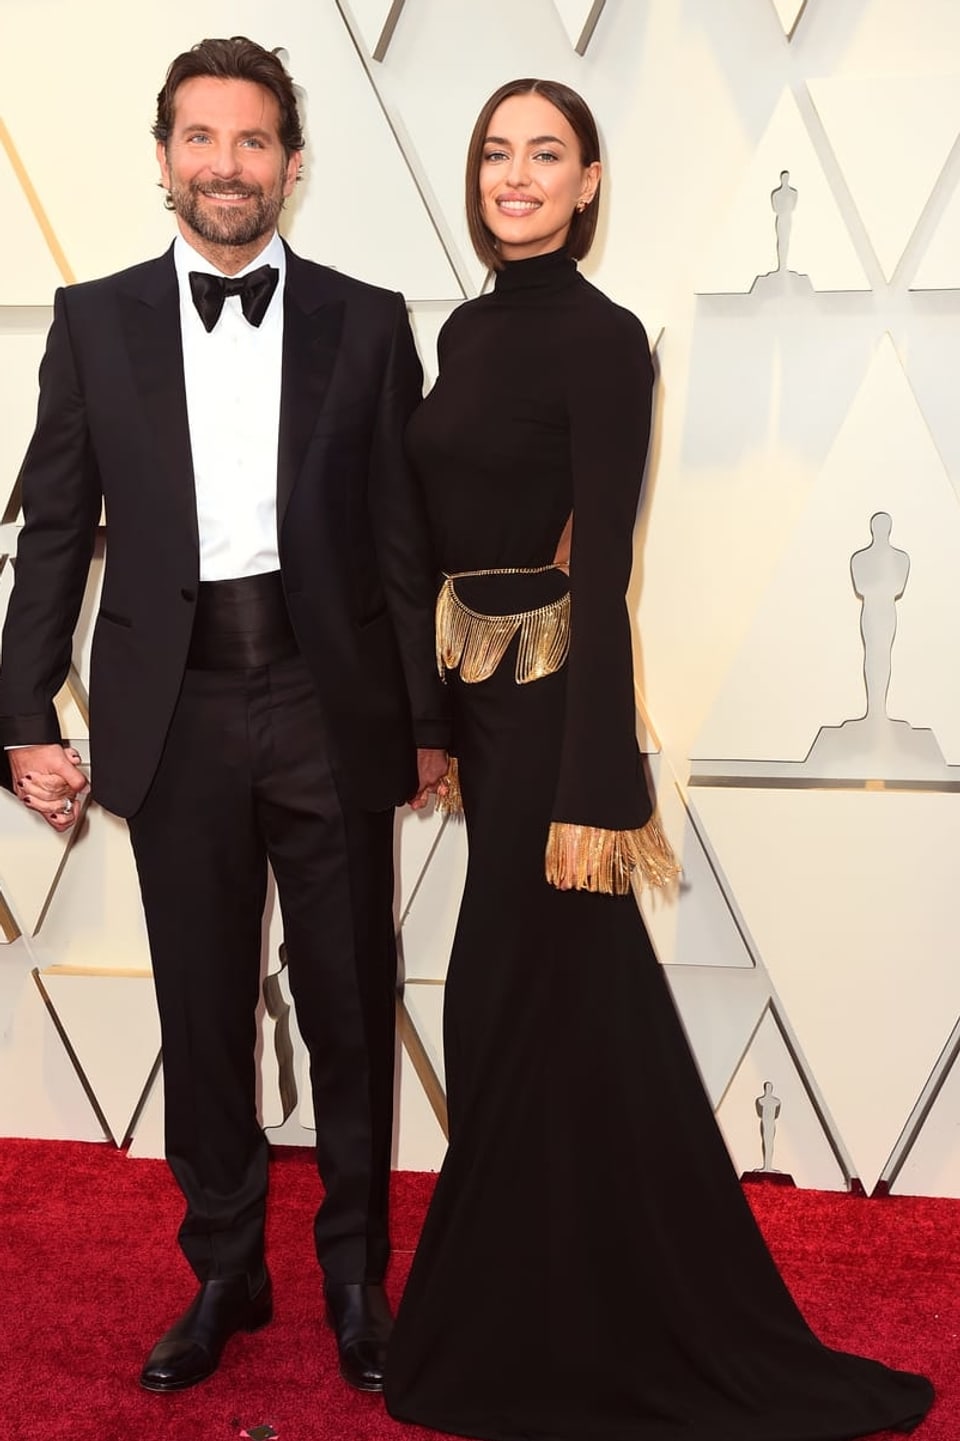 Bradley Cooper in einem schwarzen Anzug und Irina Shayk in einer schwarzen Robe